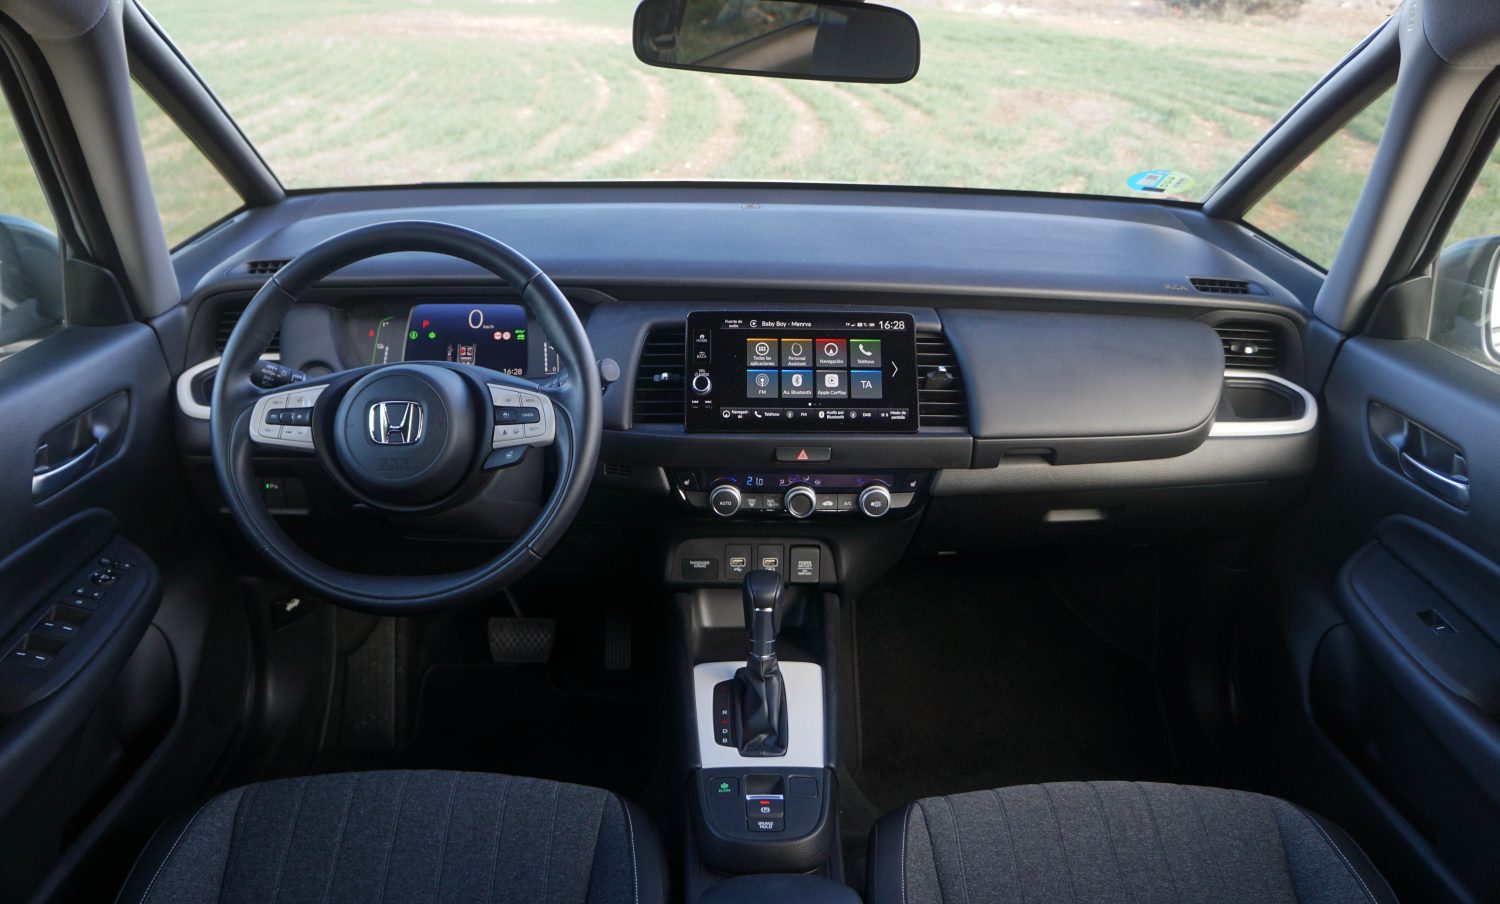 Opinion and test Honda Jazz e:HEV 109 CV Hybrid: Very frugal